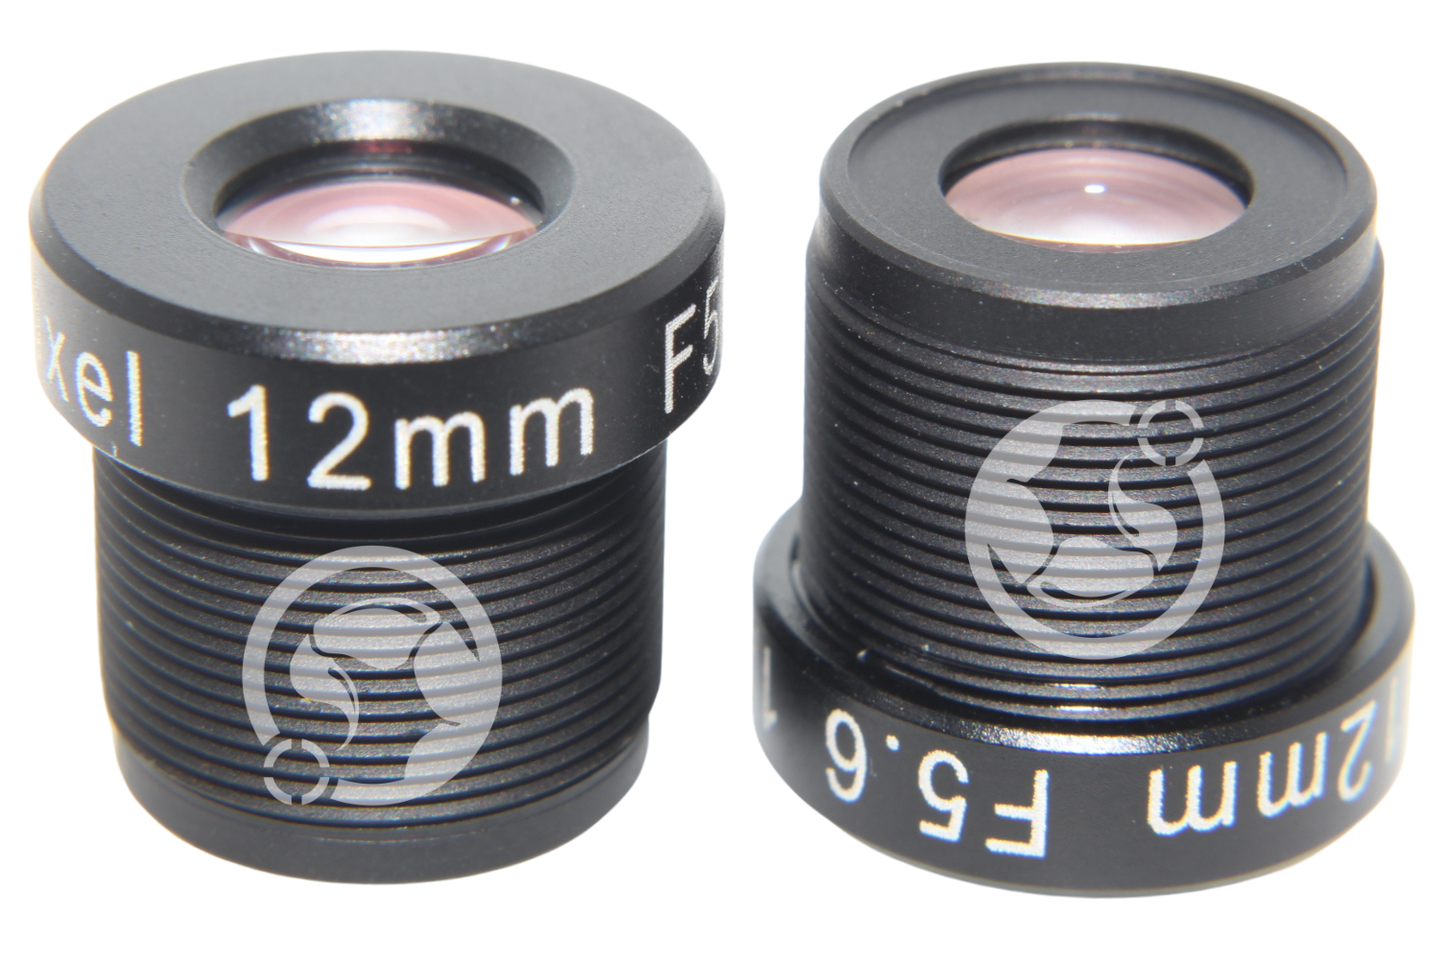 M12 Lens 12mm F5.6